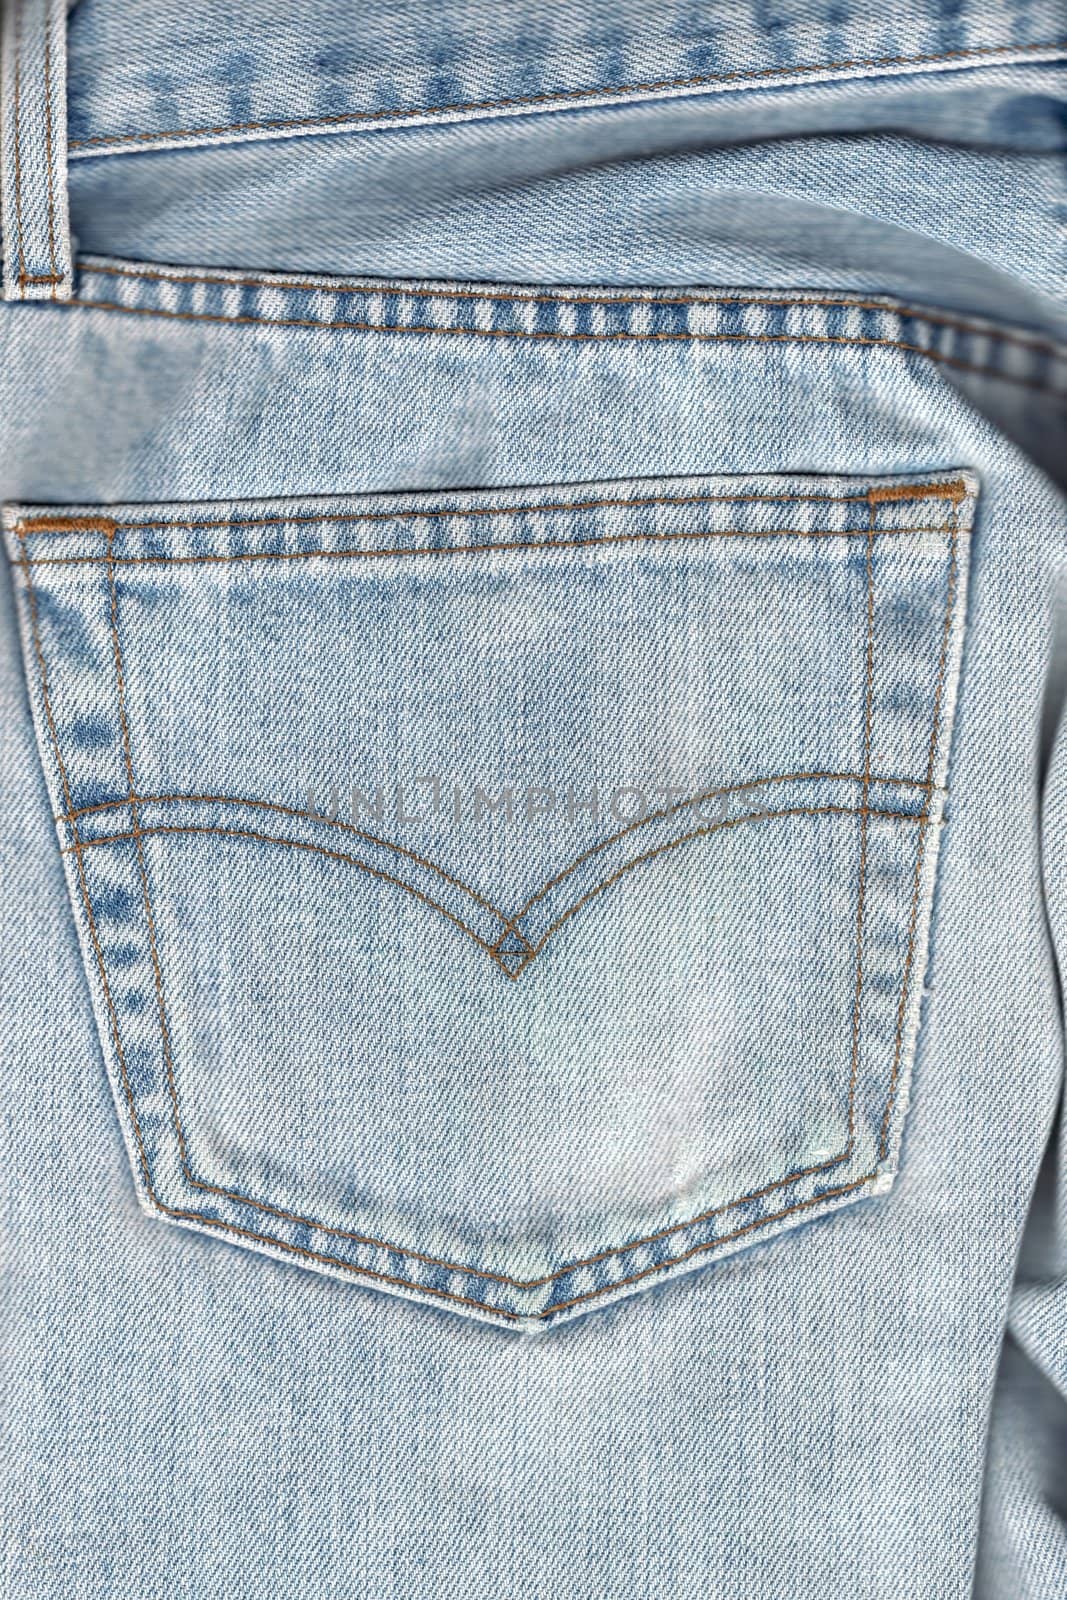 Back pocket on worned jeans